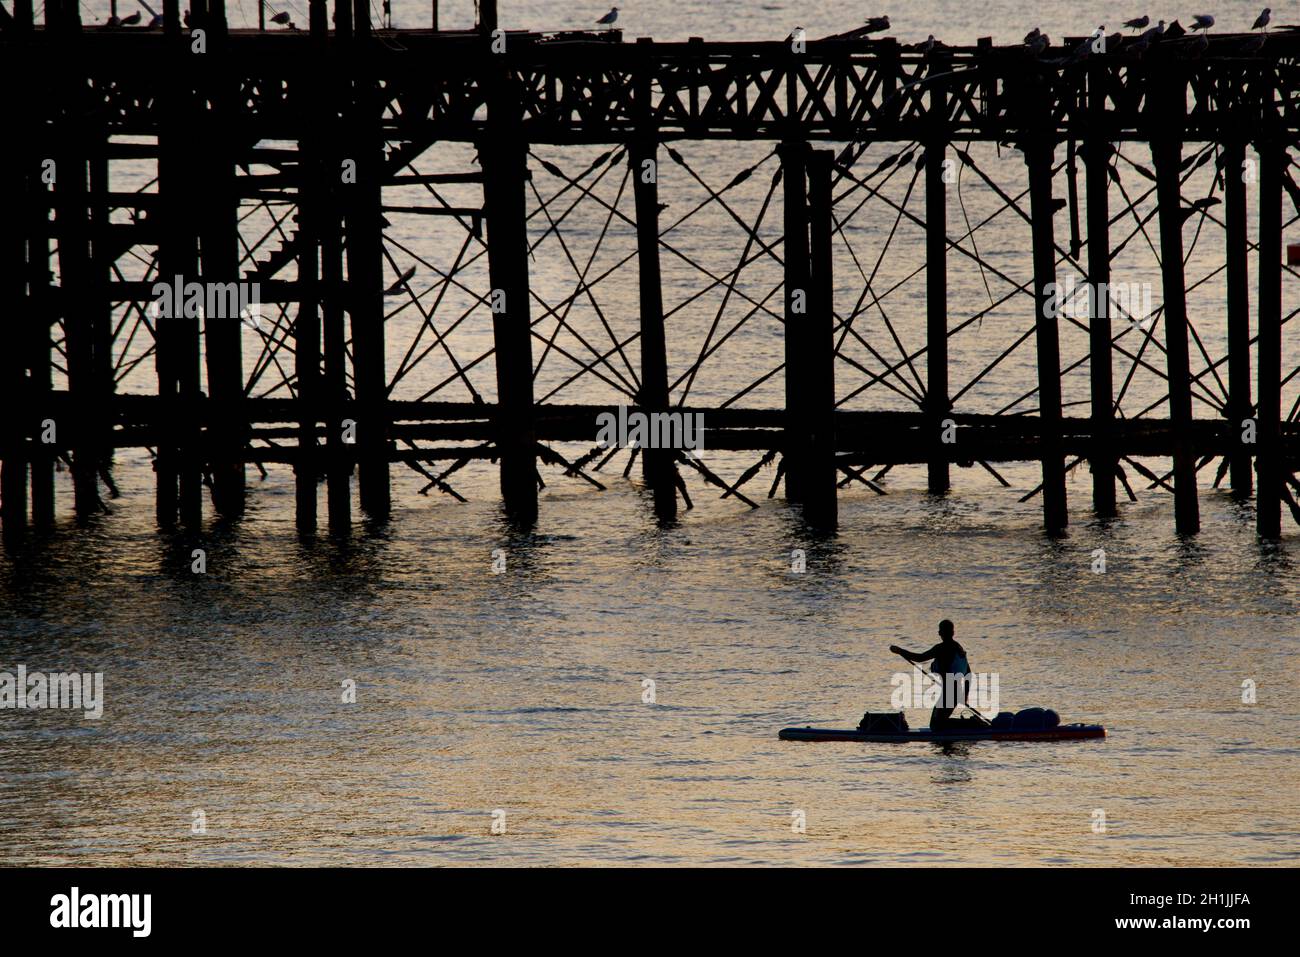 Pédalo en paddleboarder silhouetté autour de la jetée ouest abandonnée au coucher du soleil, Brighton, Angleterre.Construit en 1866 et fermé en 1975, le quai est toujours classé de catégorie I et un site bien connu. Banque D'Images